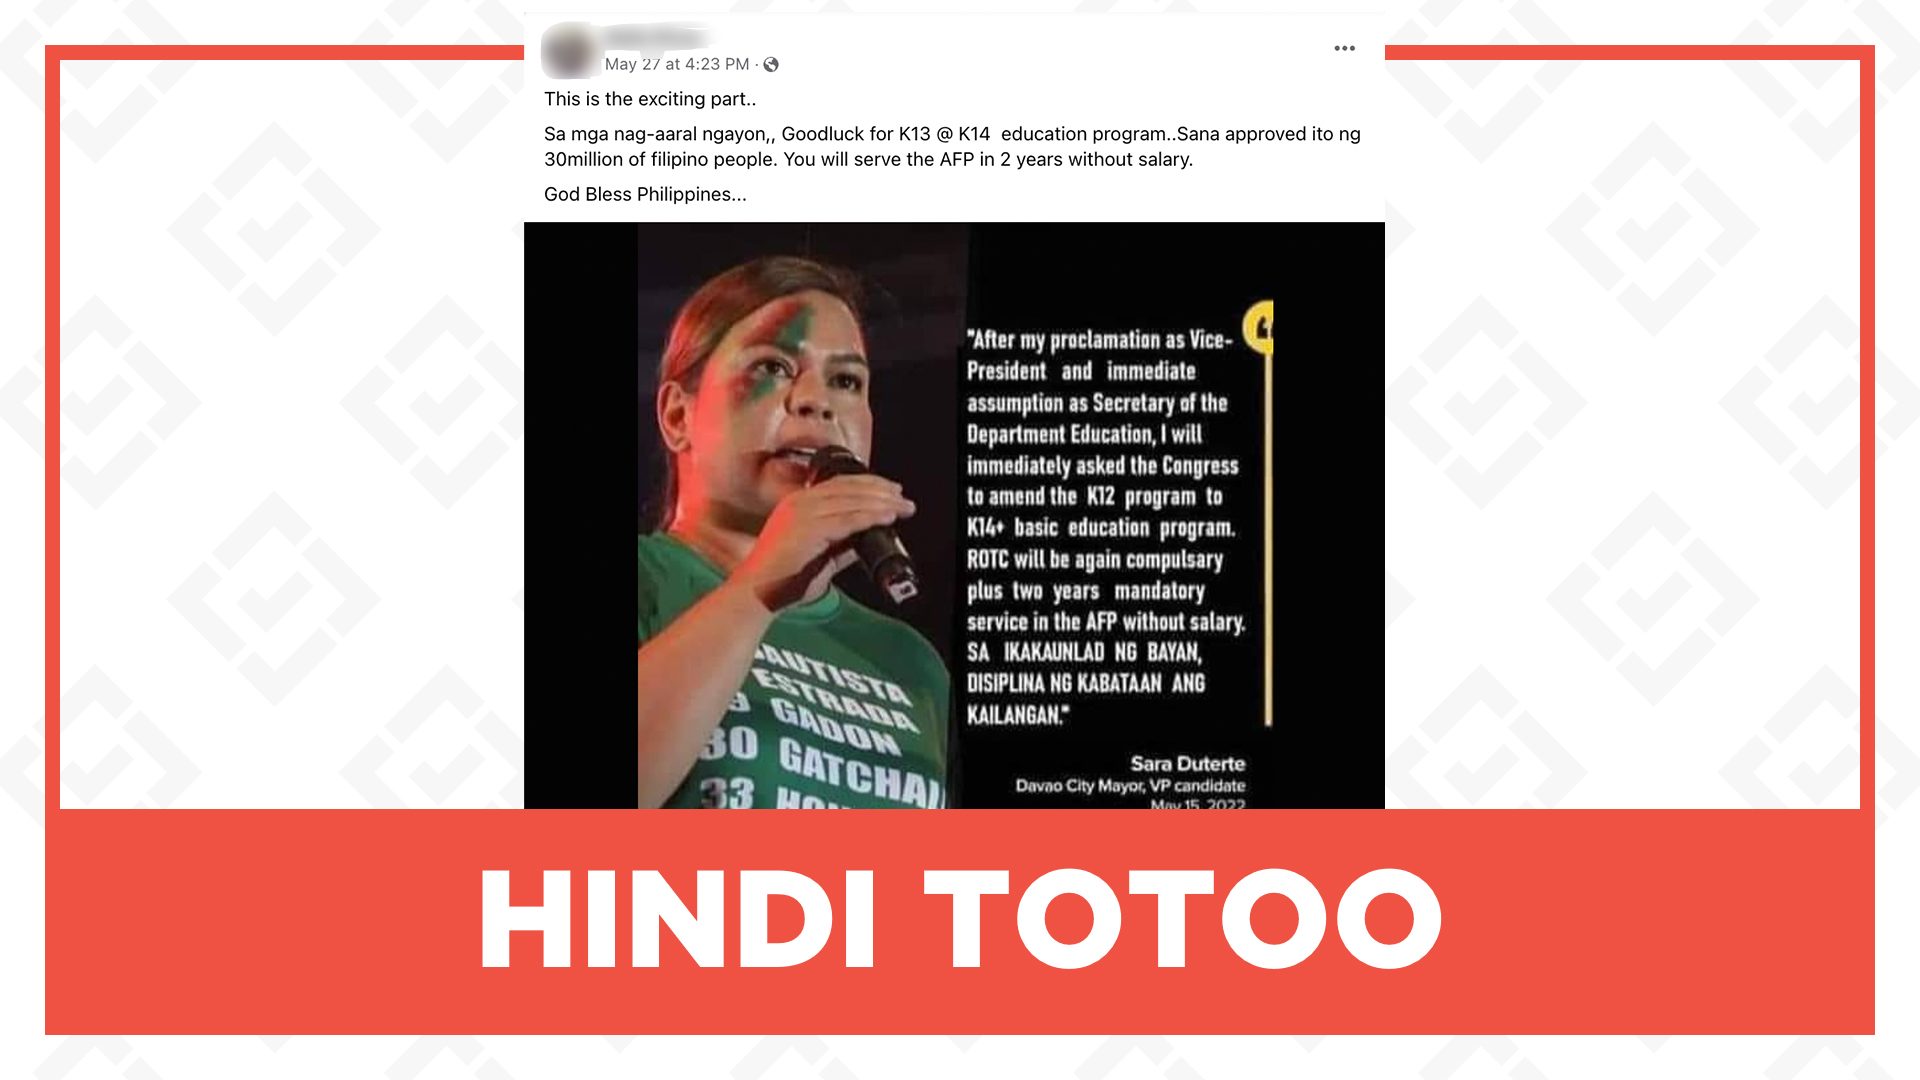 HINDI TOTOO: Aamyendahan ni Sara Duterte ang K-12 program upang gawing K-14